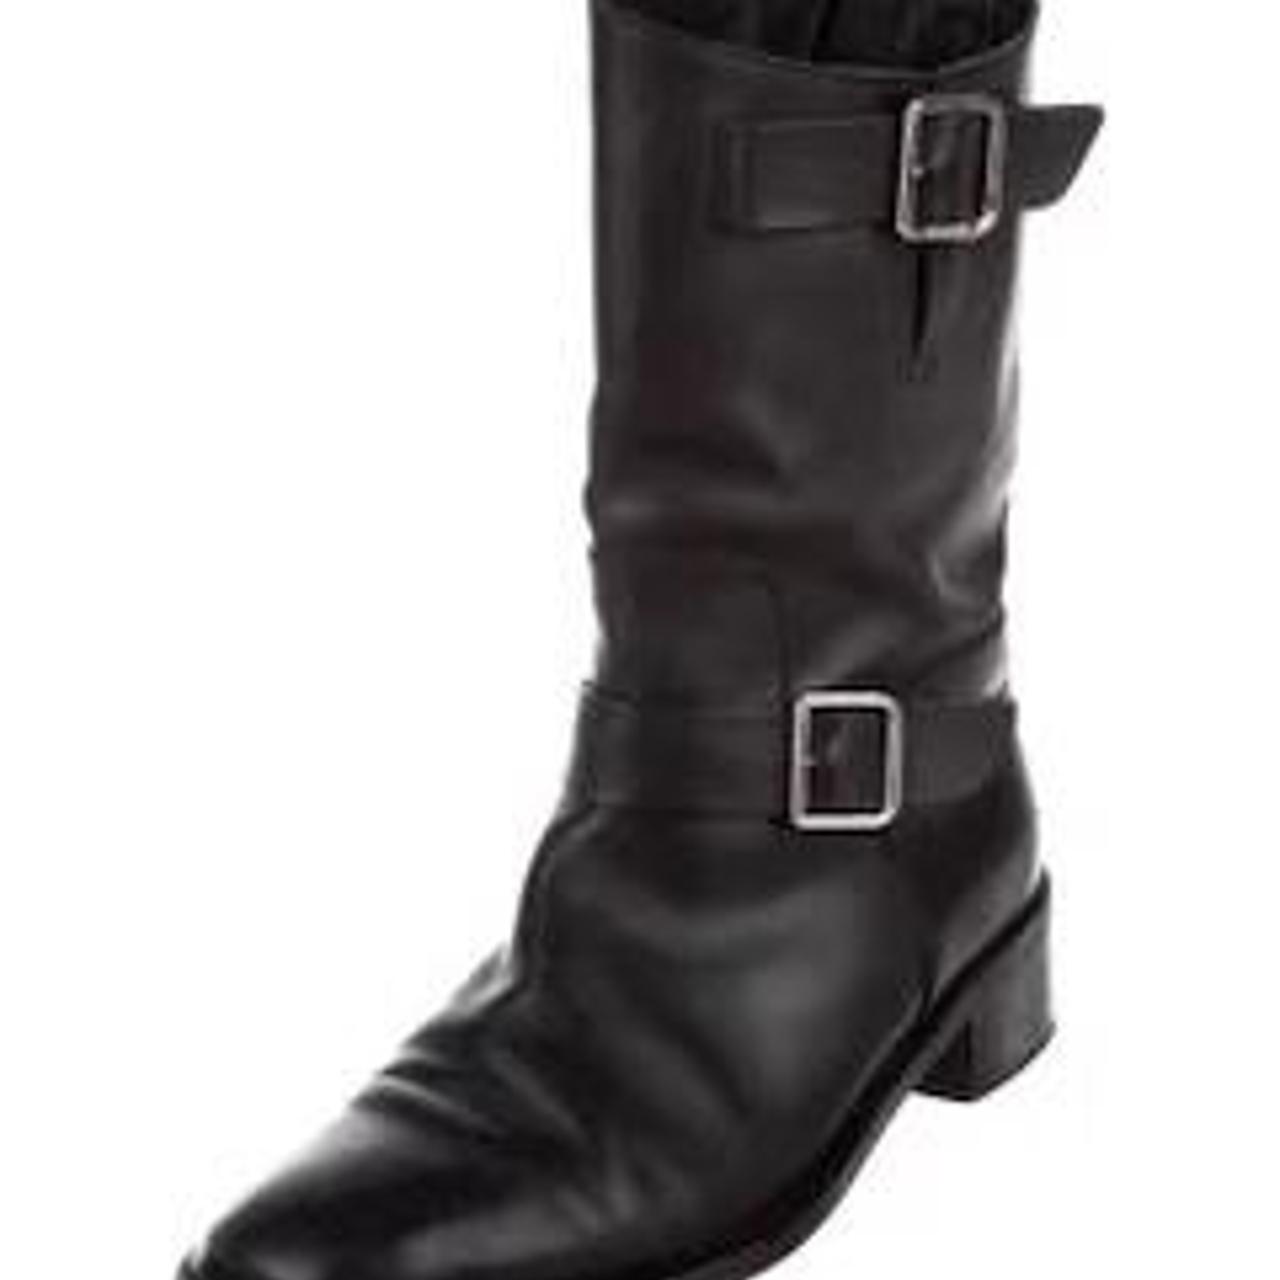 Chanel combat boots EU size 38/UK 5 Authentic - Depop